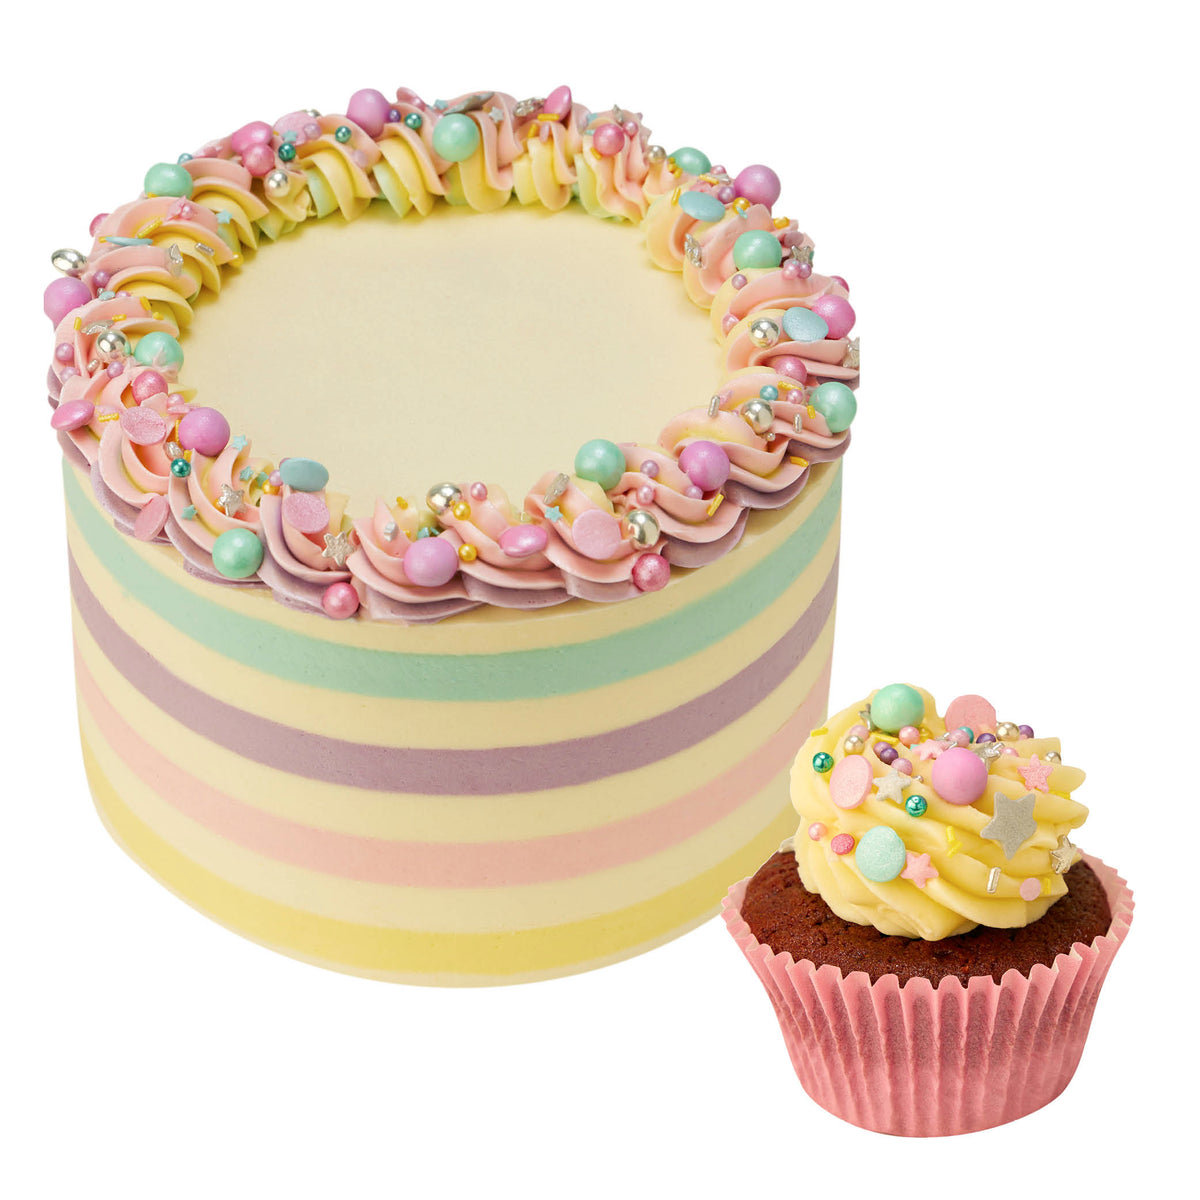 Premium Pastel colour Cake-Two-tier Birthday Cakes - Cake Square Chennai |  Cake Shop in Chennai